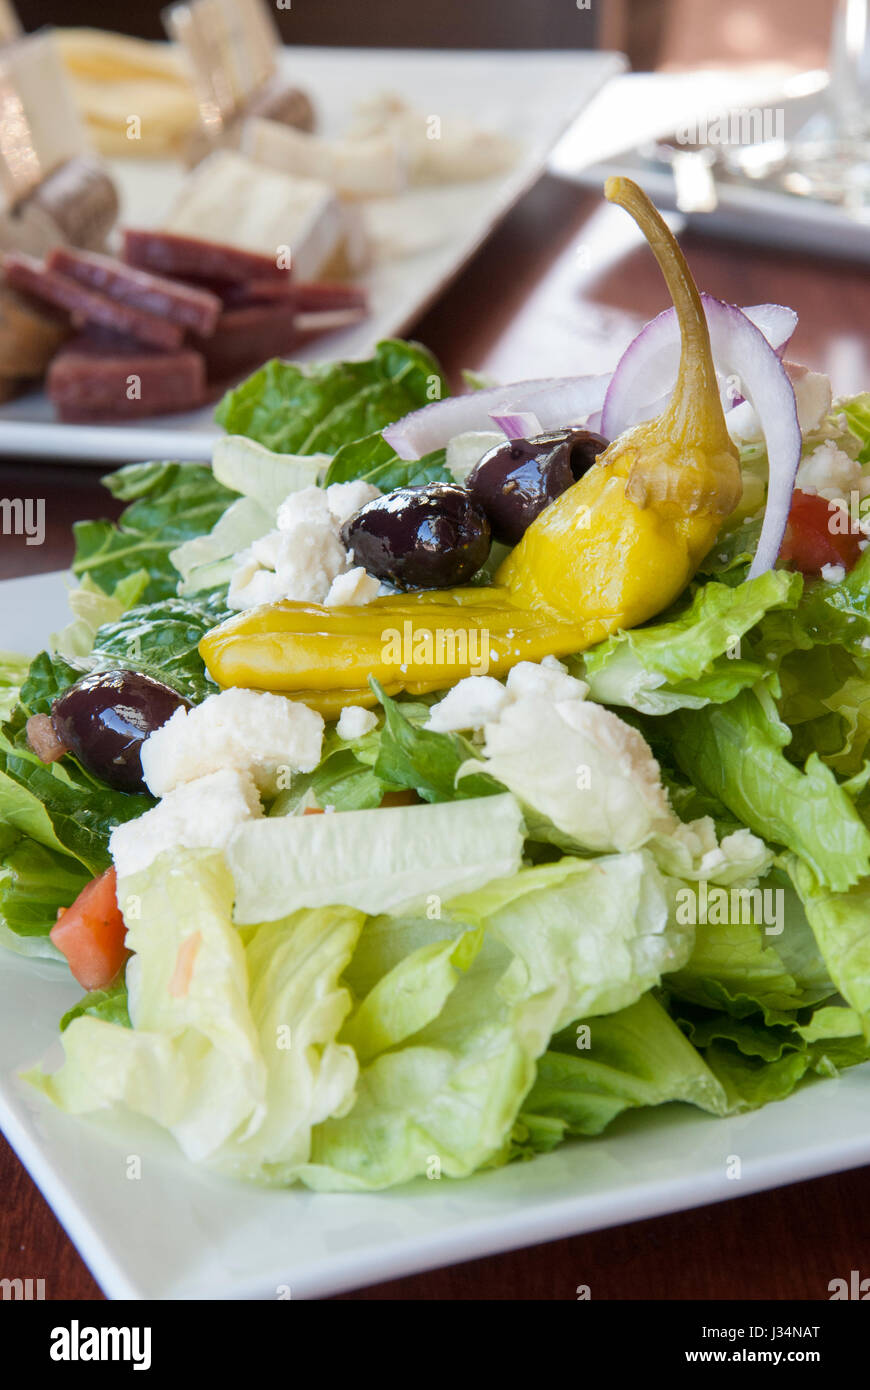 Une nouvelle salade grecque avec fromage feta, olives kalamata, peperoncino et fait un lite et repas santé, accompagnée d'une assiette de charcuterie Banque D'Images